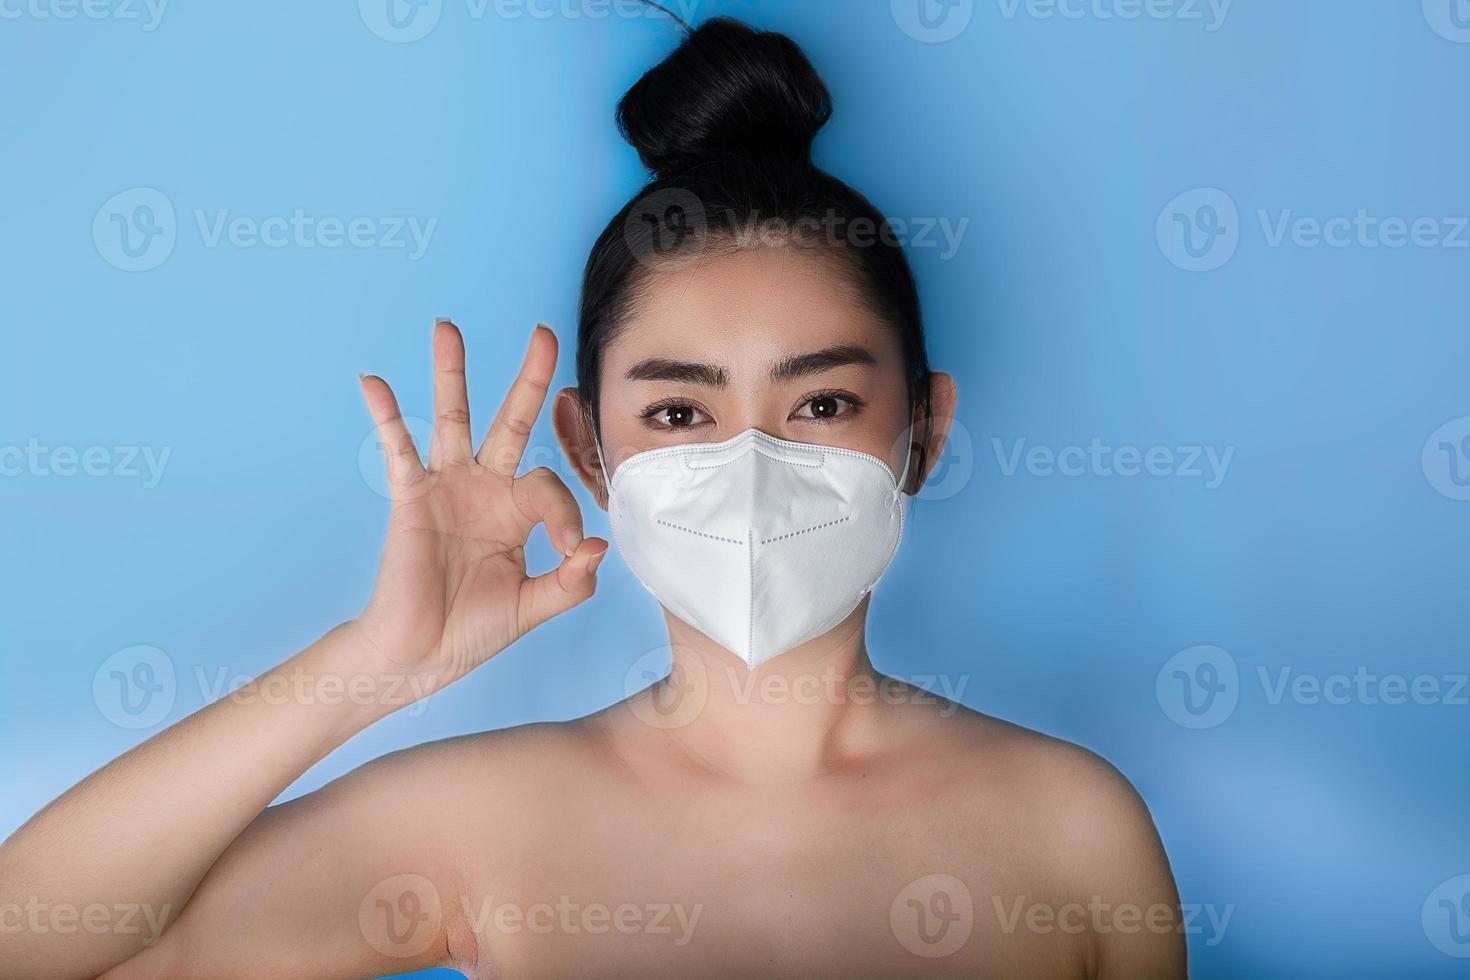 gros plan d'une femme mettant un masque respiratoire n95 pour se protéger des maladies respiratoires aéroportées comme la grippe covid-19 corona pm2.5 poussière et smog, geste du pouce levé avec la main montrant le signe ok photo